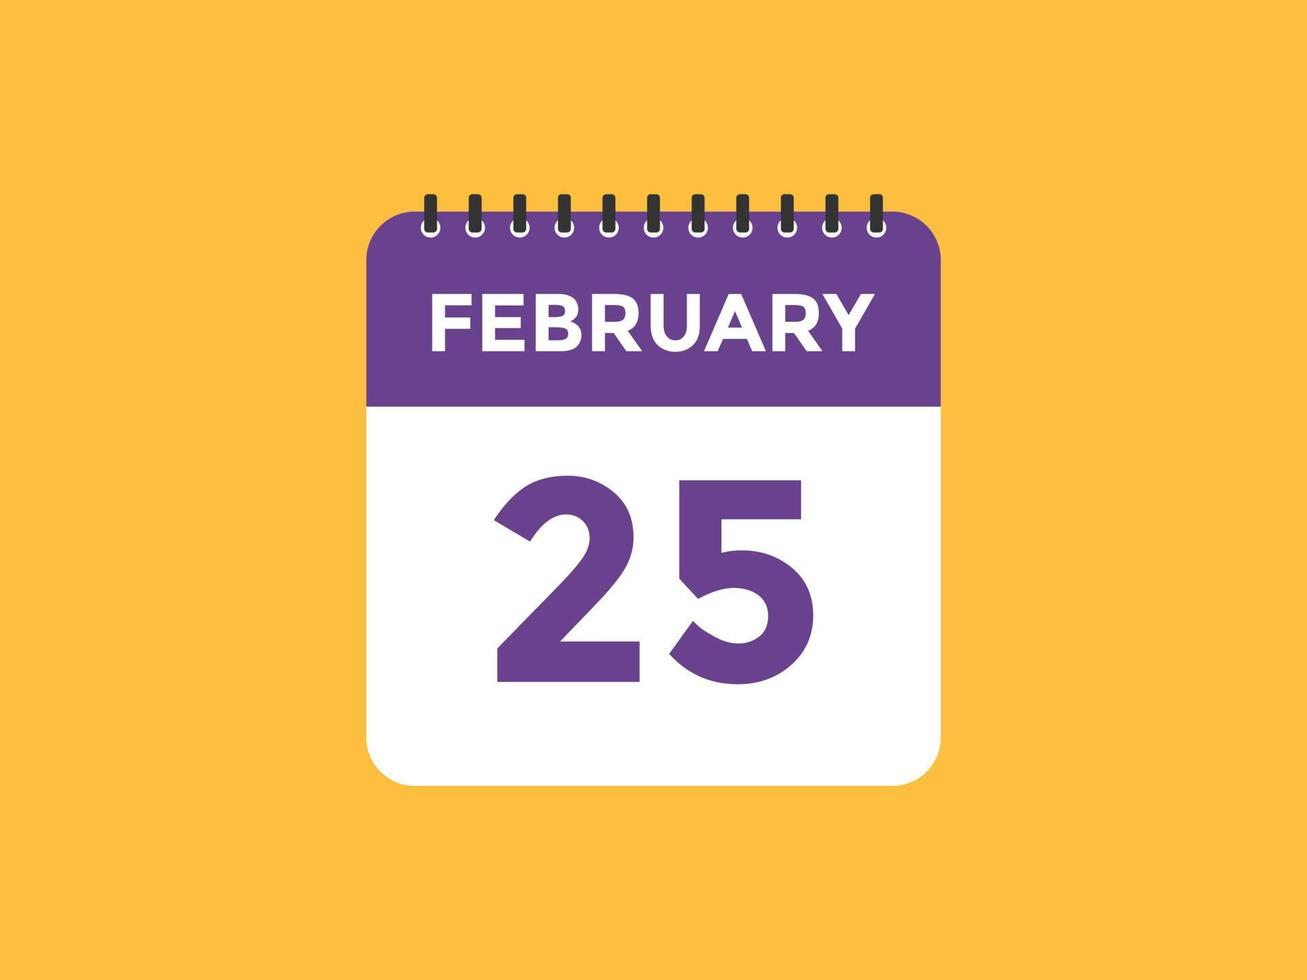 lembrete de calendário de 25 de fevereiro. 25 de fevereiro modelo de ícone de calendário diário. modelo de design de ícone de calendário 25 de fevereiro. ilustração vetorial vetor